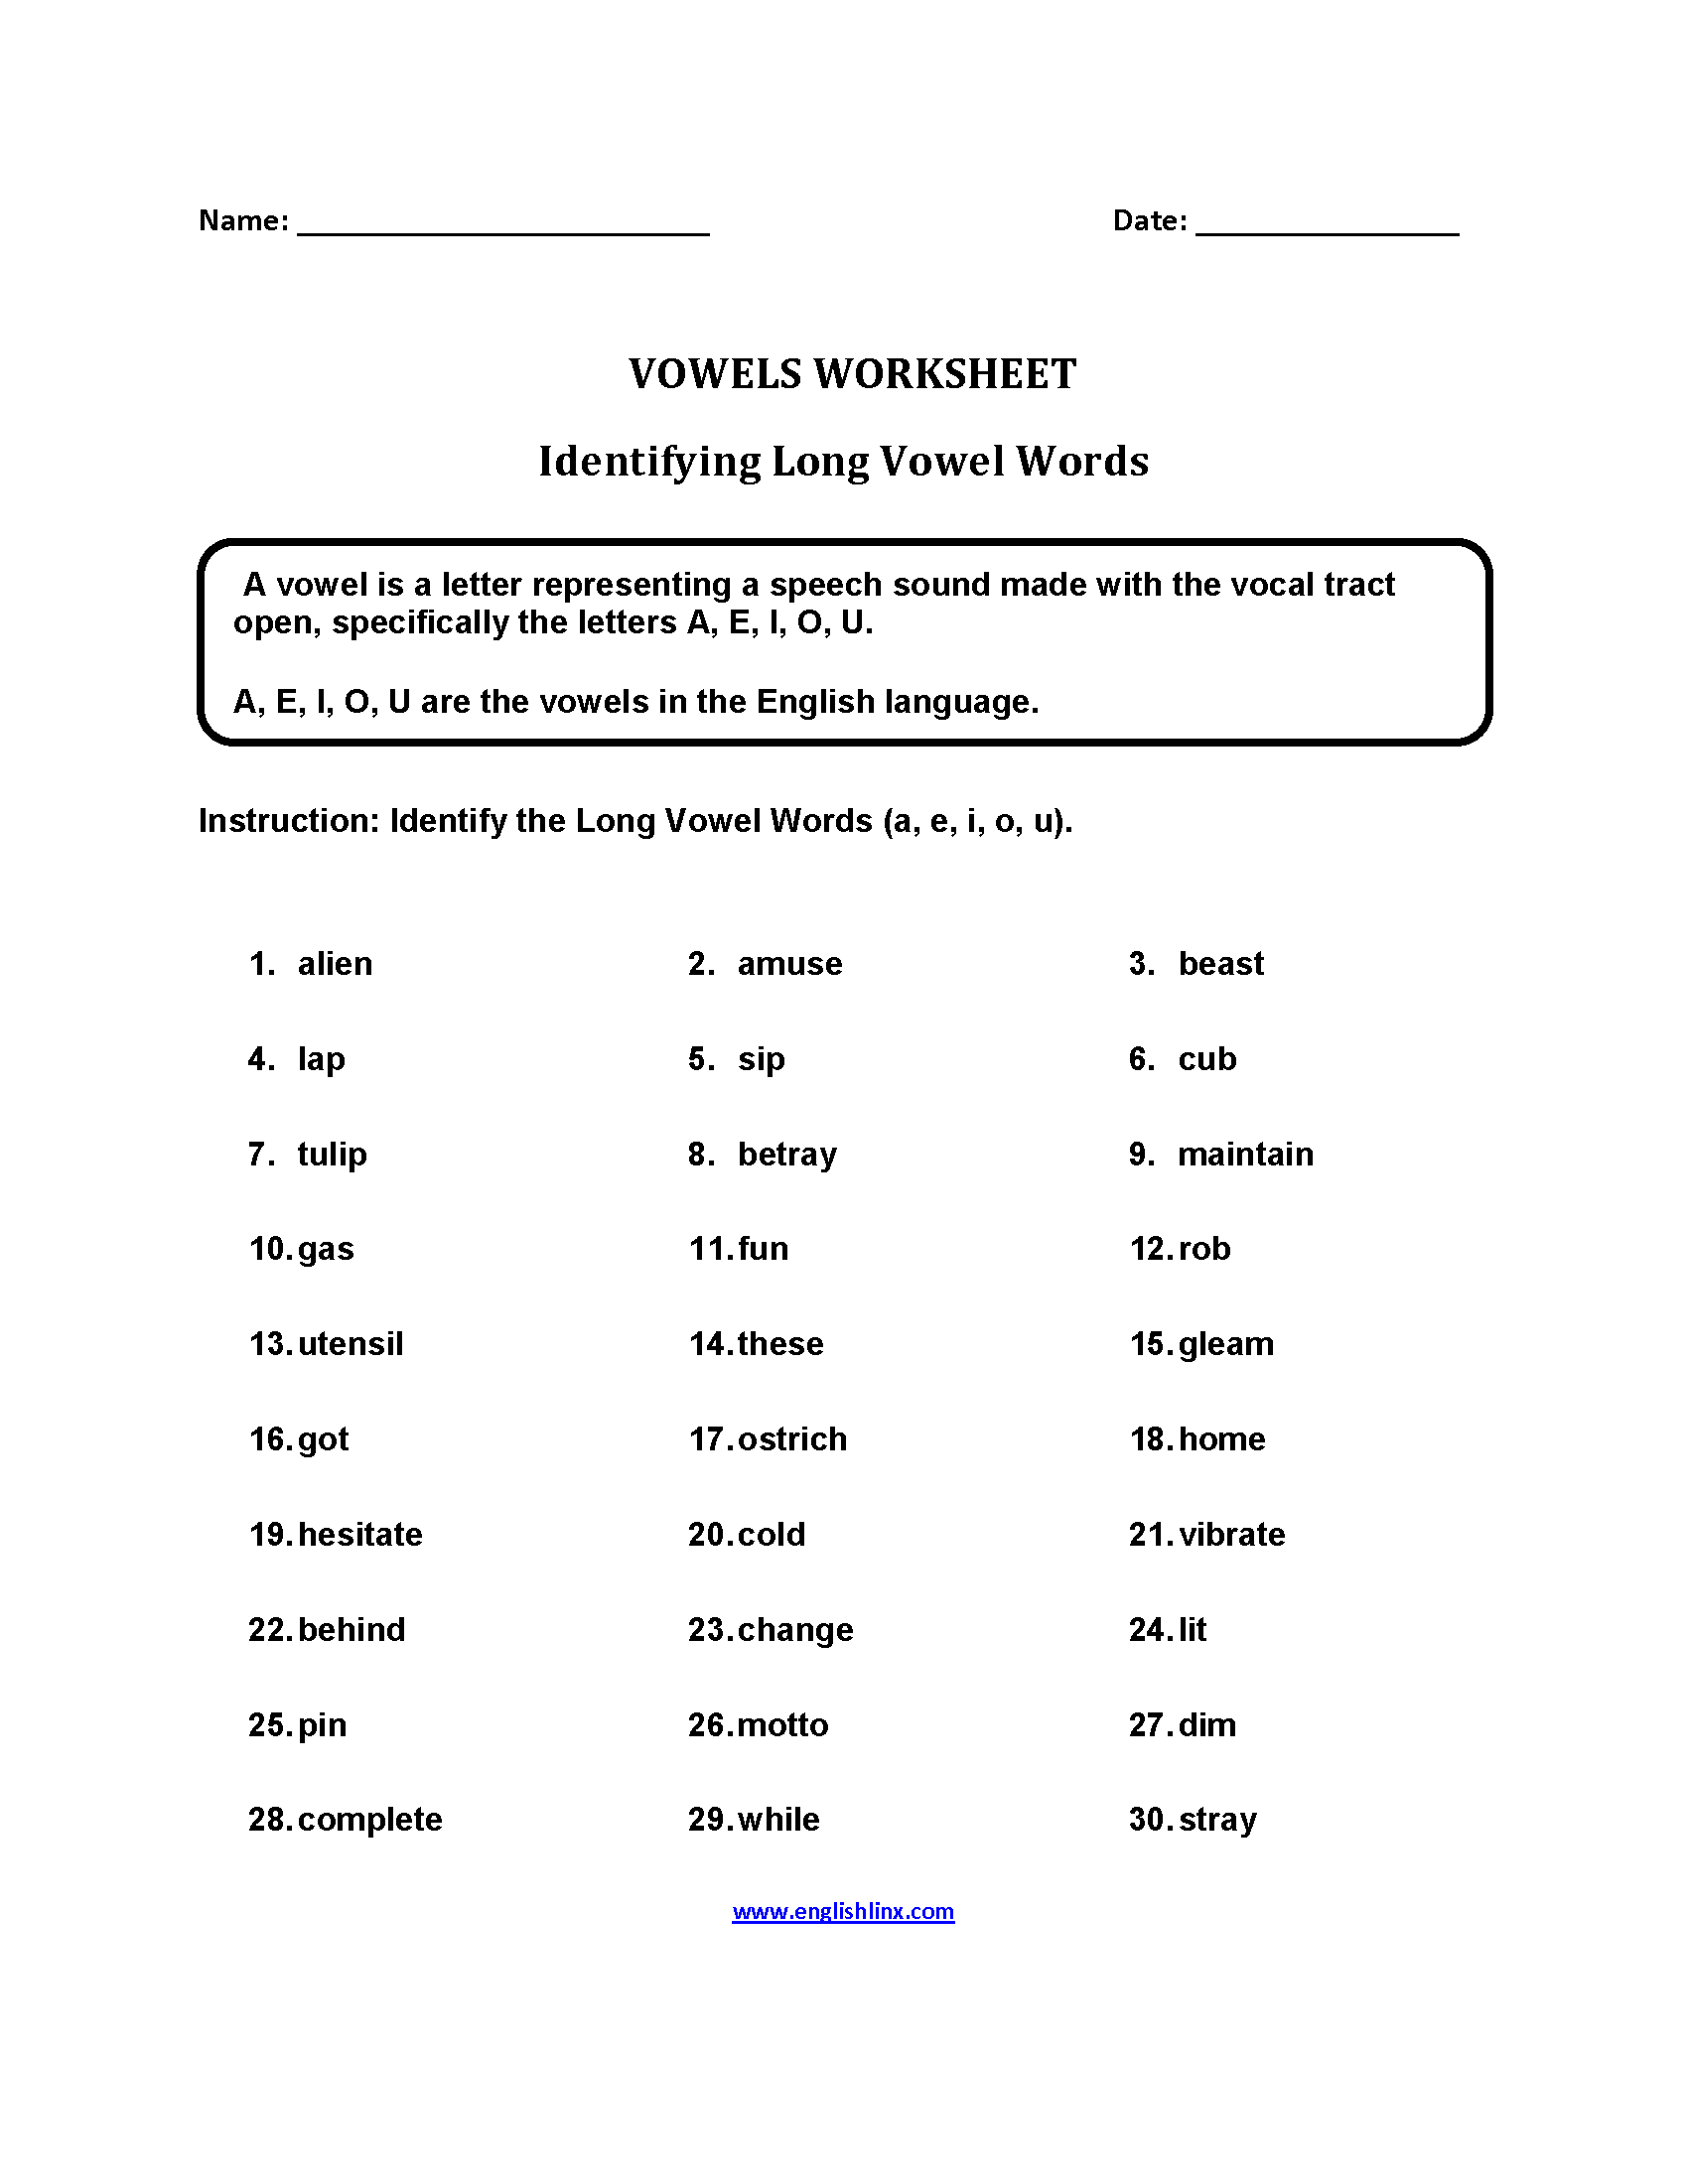 englishlinx-vowels-worksheets